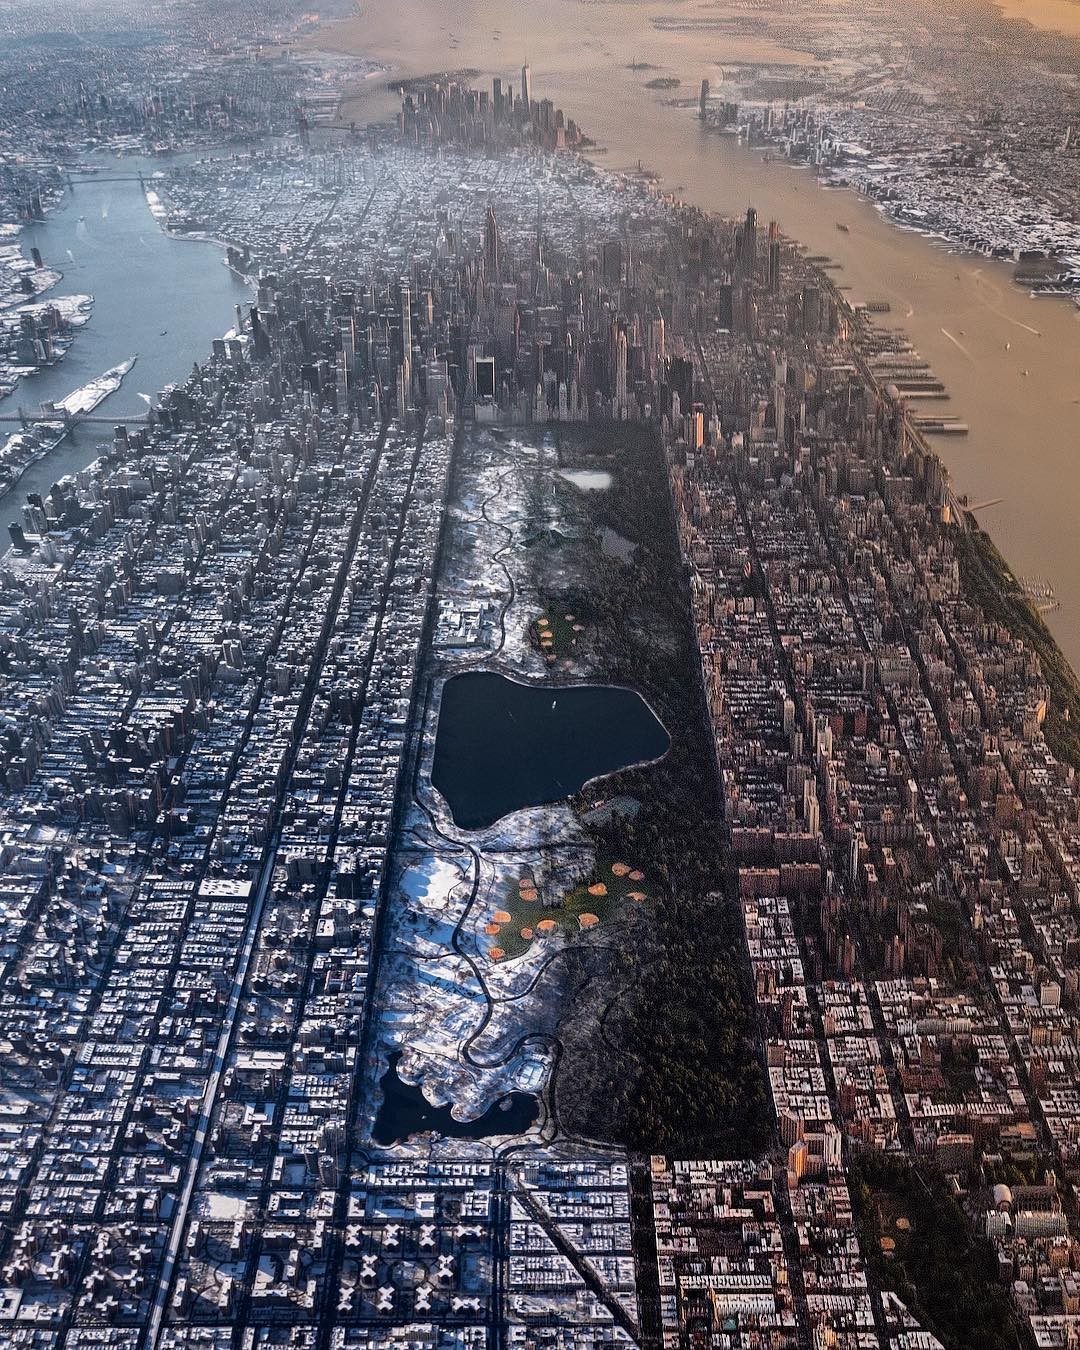 A foto produzido por Paul Seibert mostra uma visão aérea de famosos pontos turísticos da cidade de Nova York, como o Harlem, o Central Park, o centro de Manhattan e os arranha-céus de Midtown (Foto: Reprodução/ Instagram/ @beholdingeye)